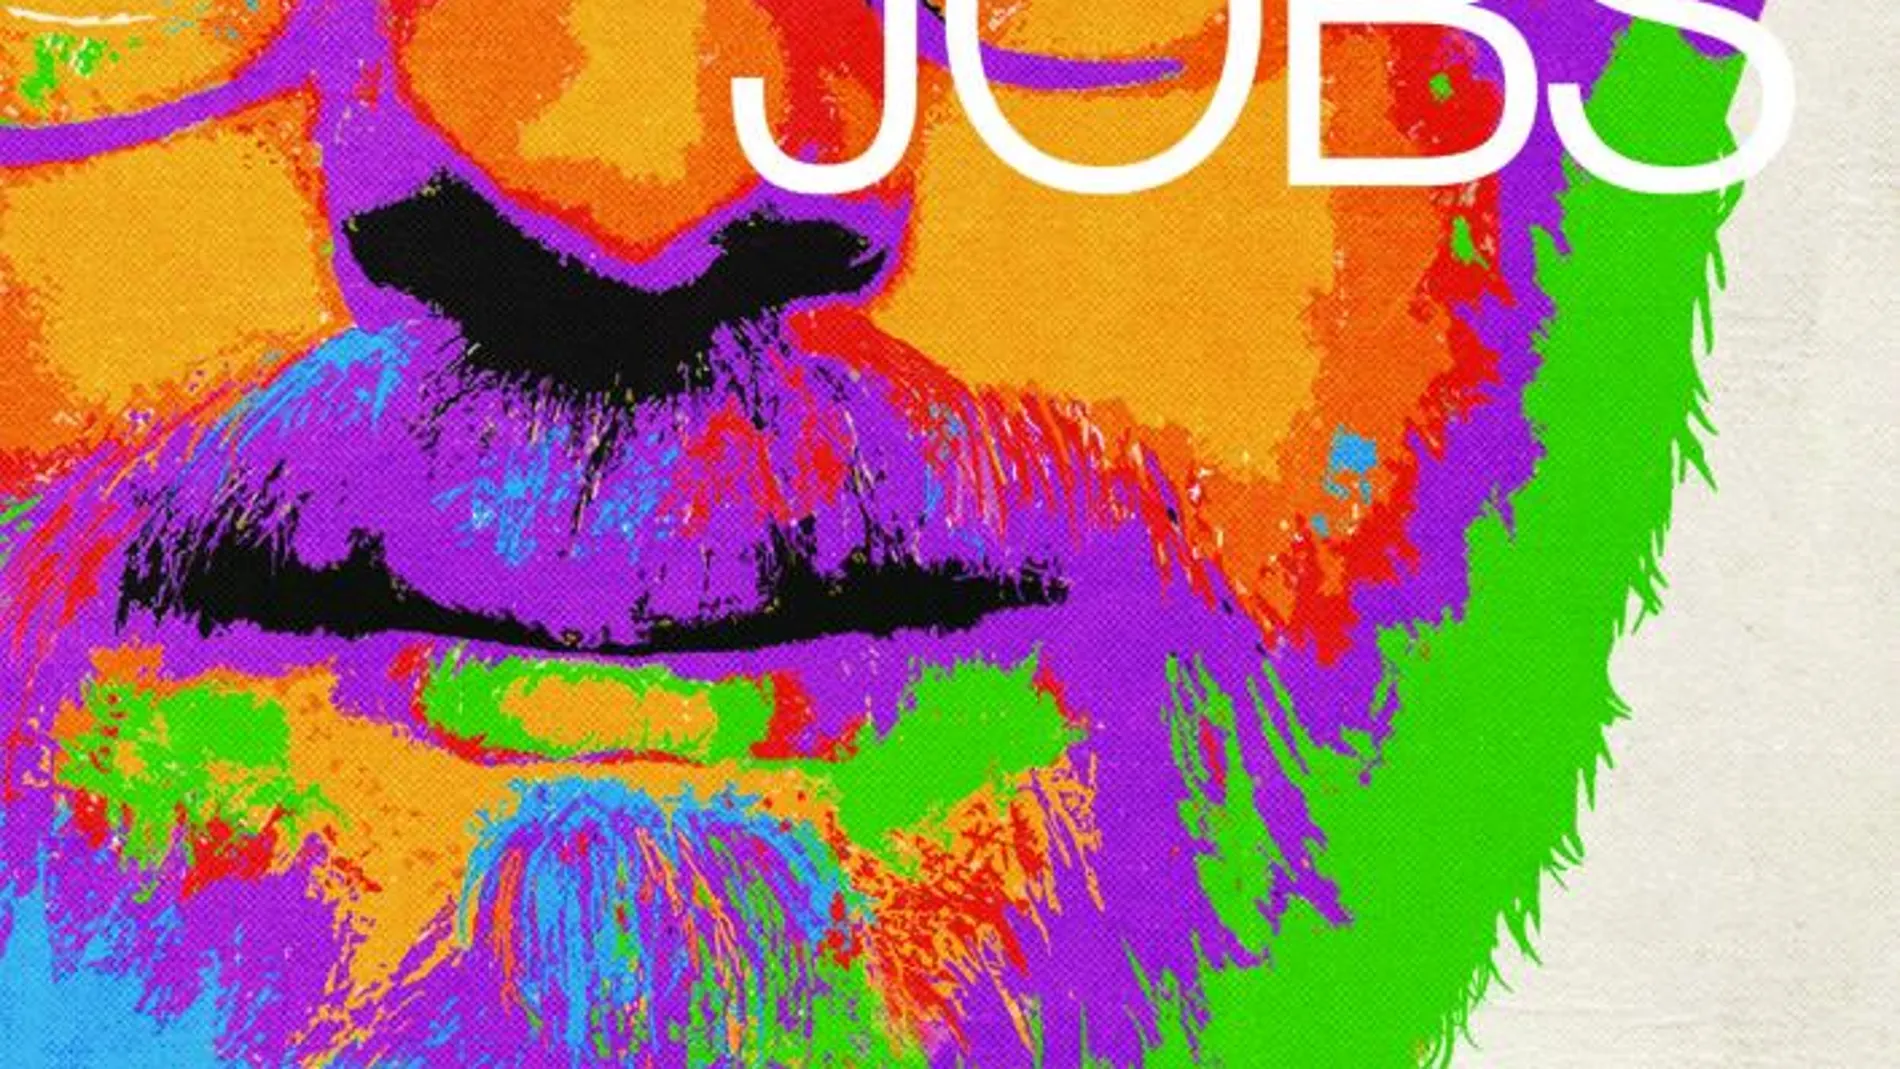 «Jobs», el biopic del creador de Apple, llegará a España el 20 de septiembre